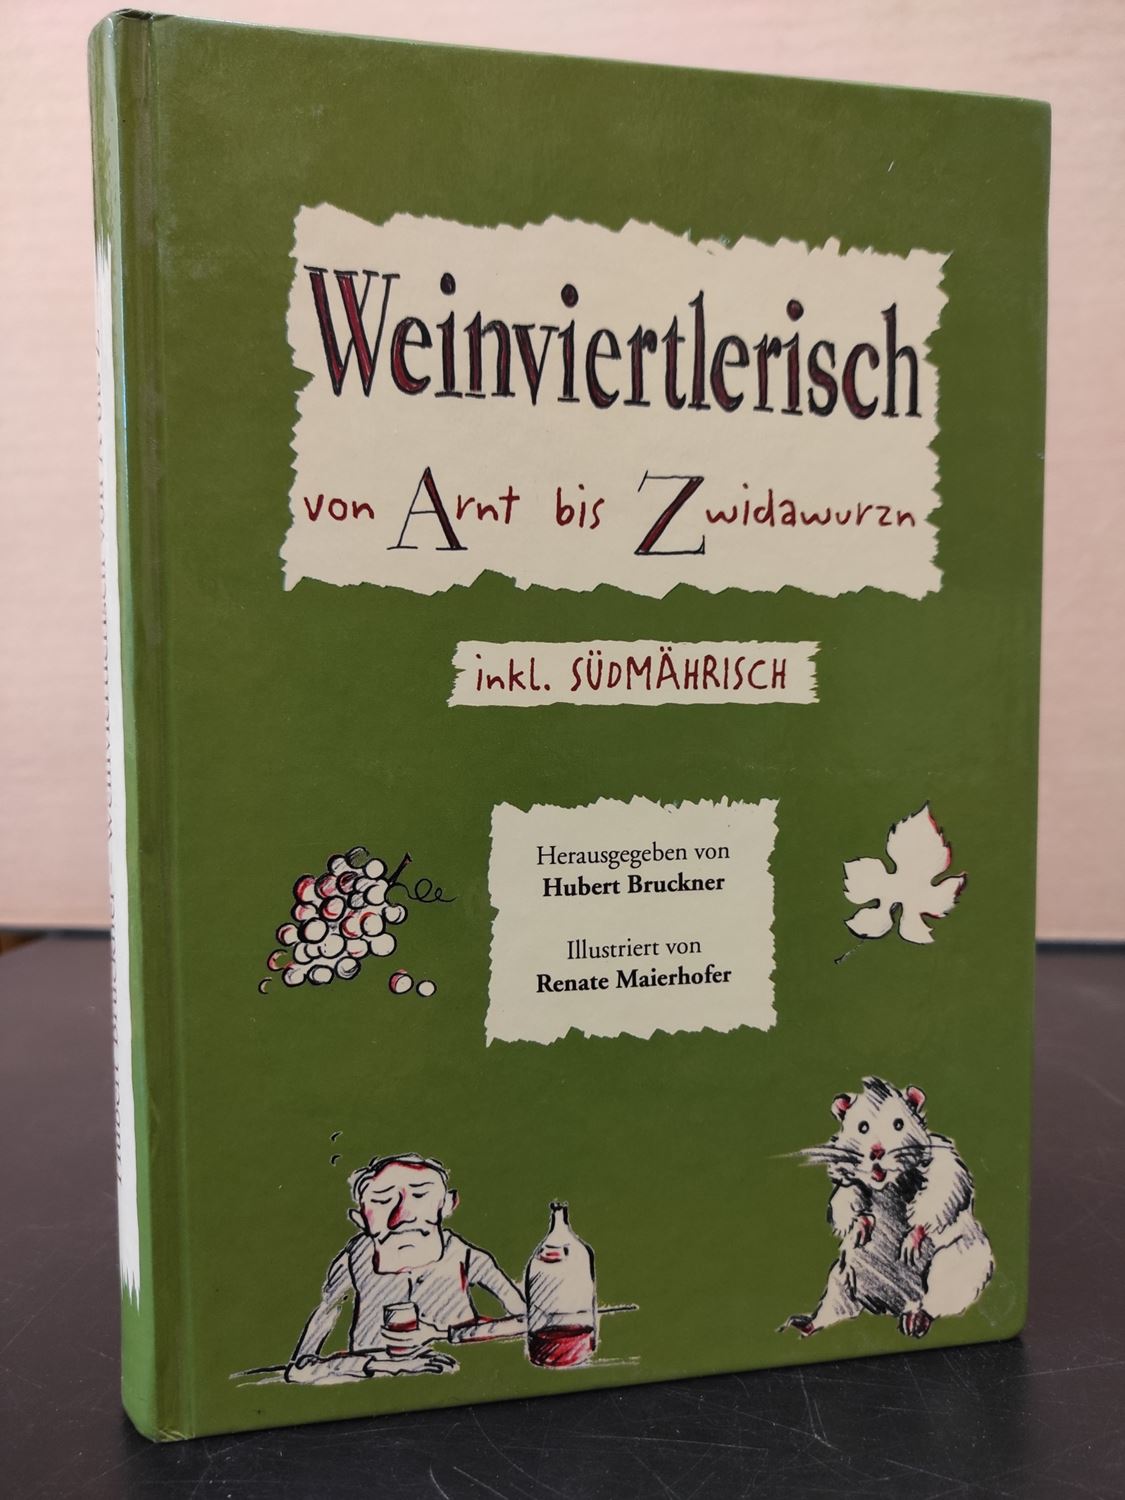 Weinviertlerisch von Arnt bis Zwidawurzn / Dialektsammlung aus dem nordöstlichen Niederösterreich - Bruckner, Hubert (Text) & Renate Maierhofer (Illustr.)